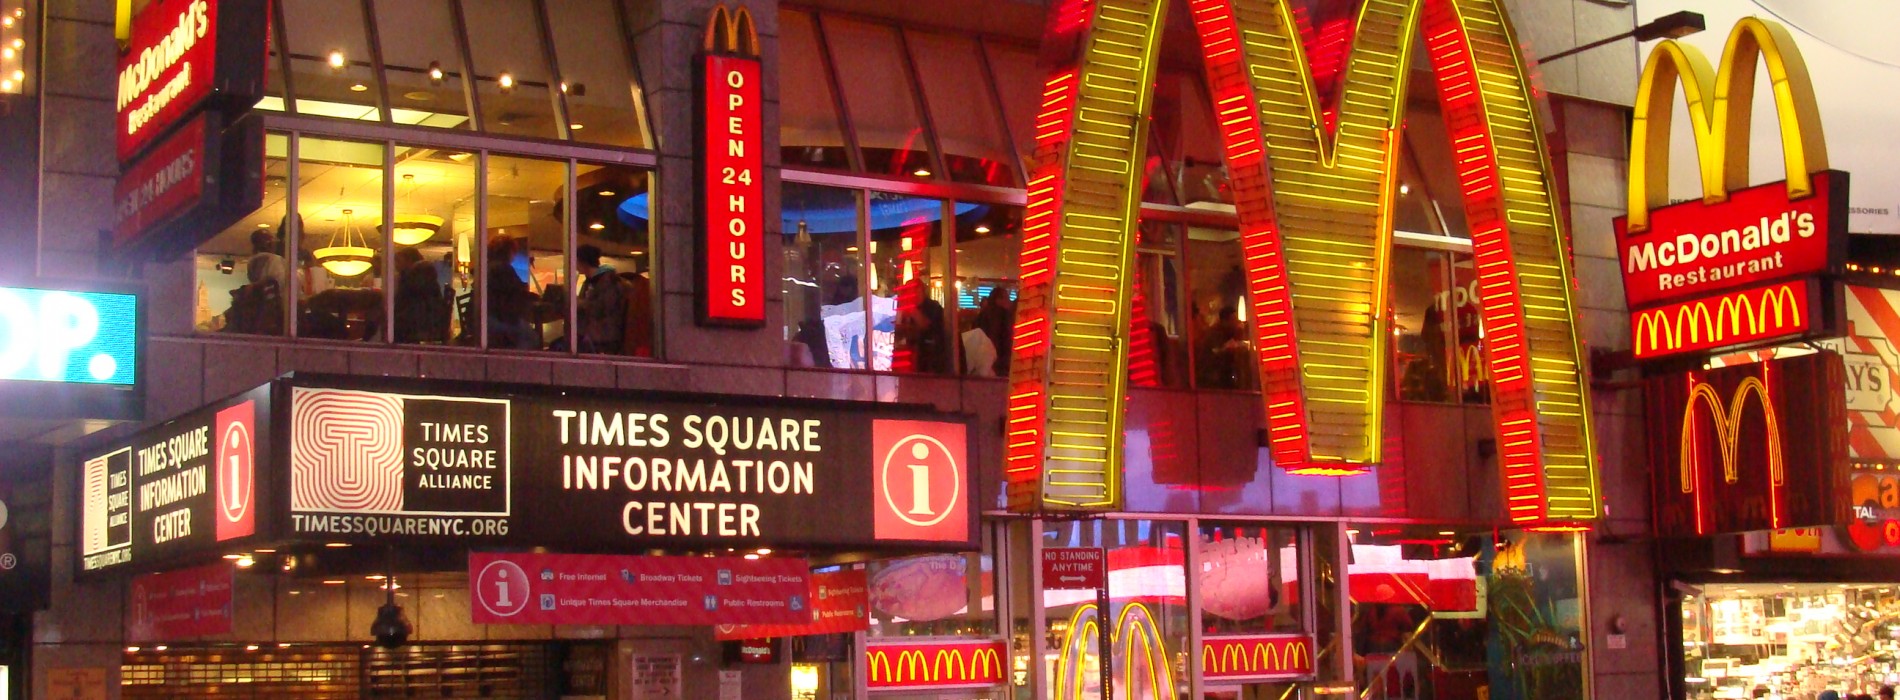 Czy wiesz, że McDonald’s ma swoją normą jakościową – SQMS?